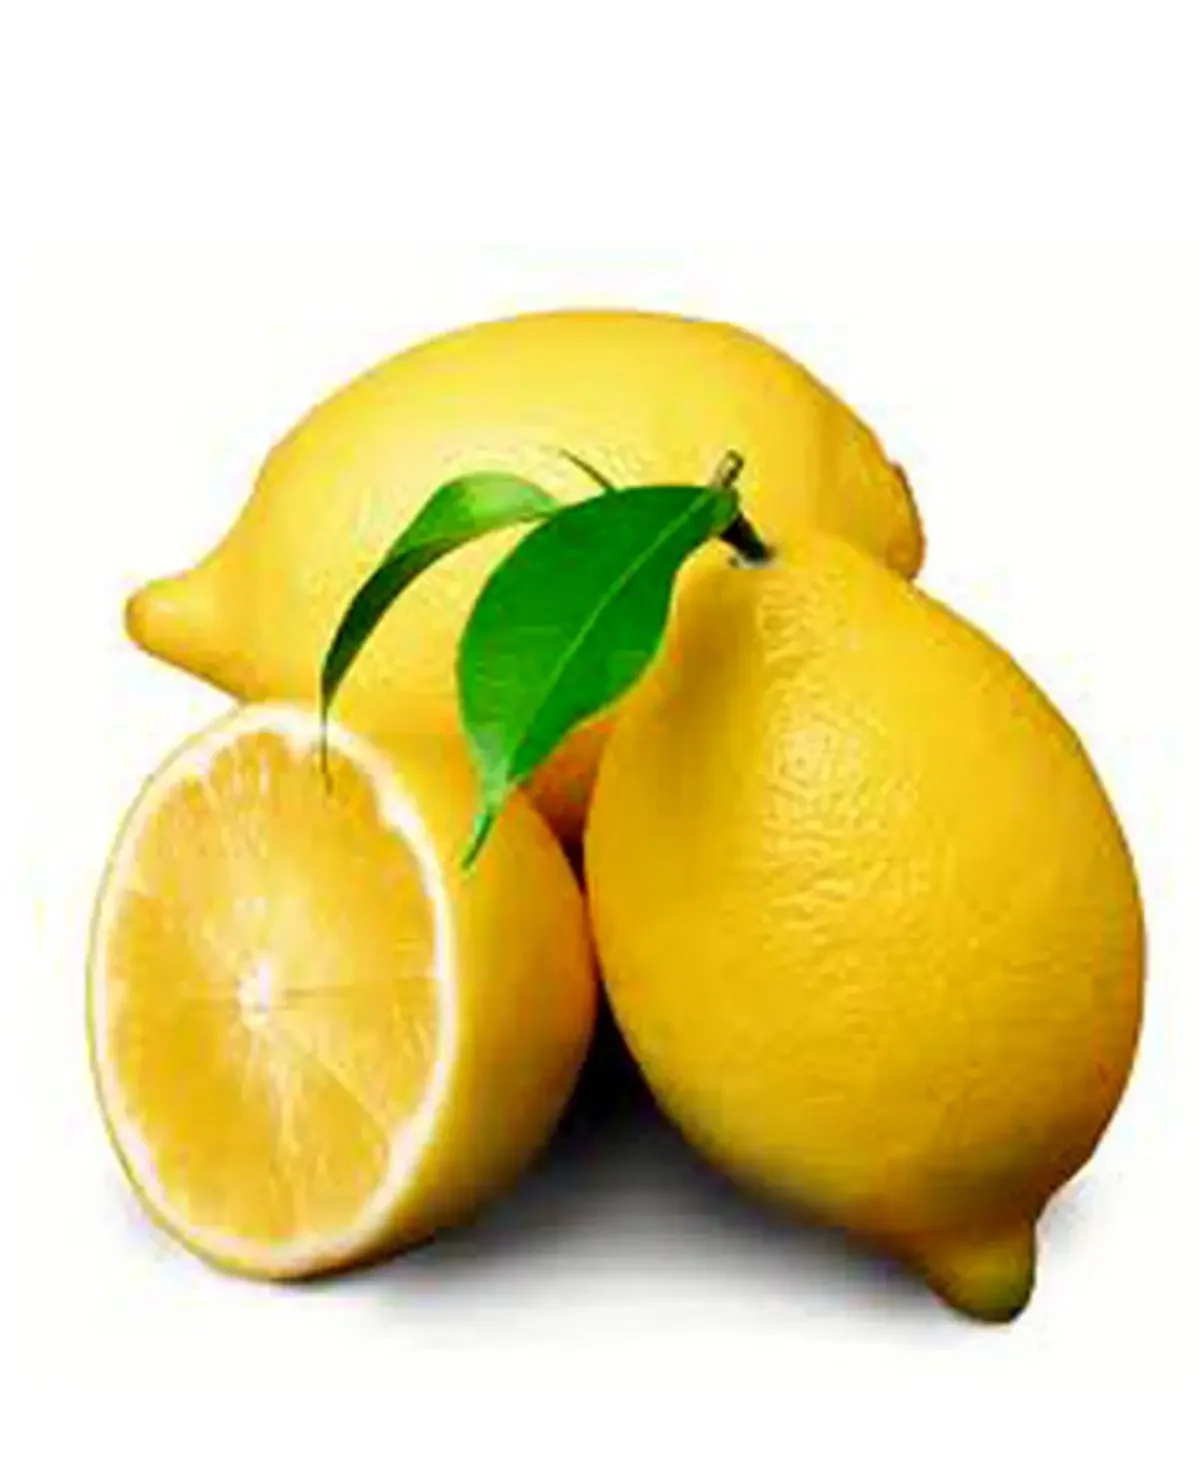 لیموی یخ زده - لیمو ترش